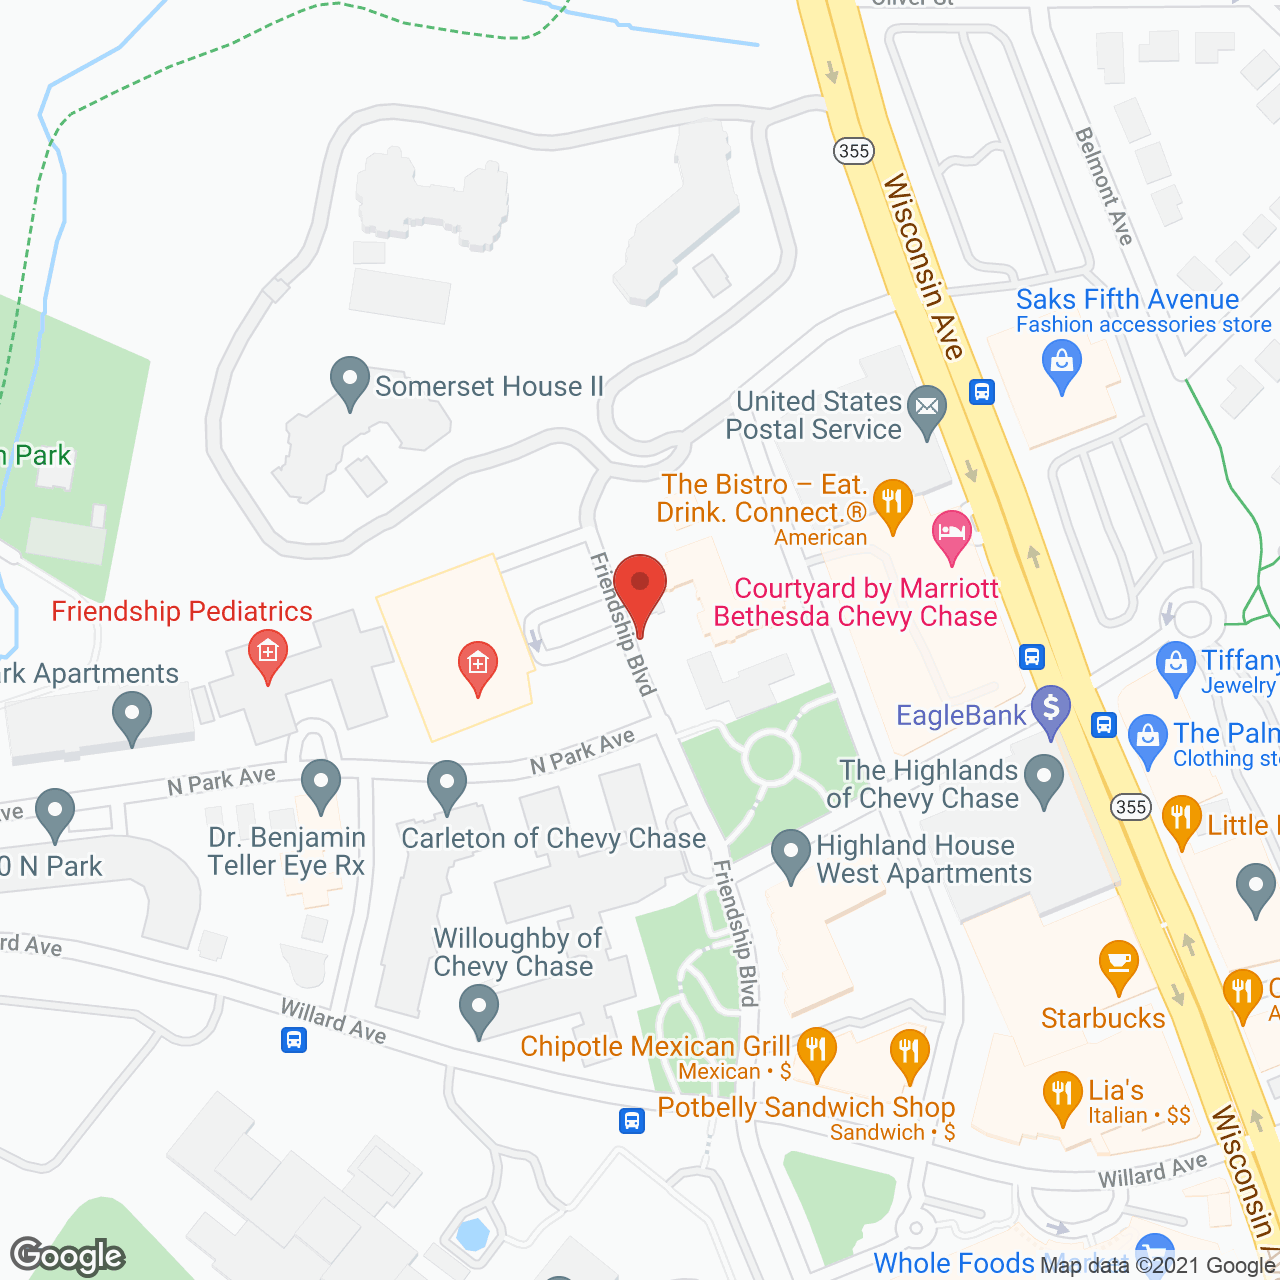 Brighton Gardens of Friendship Heights in google map